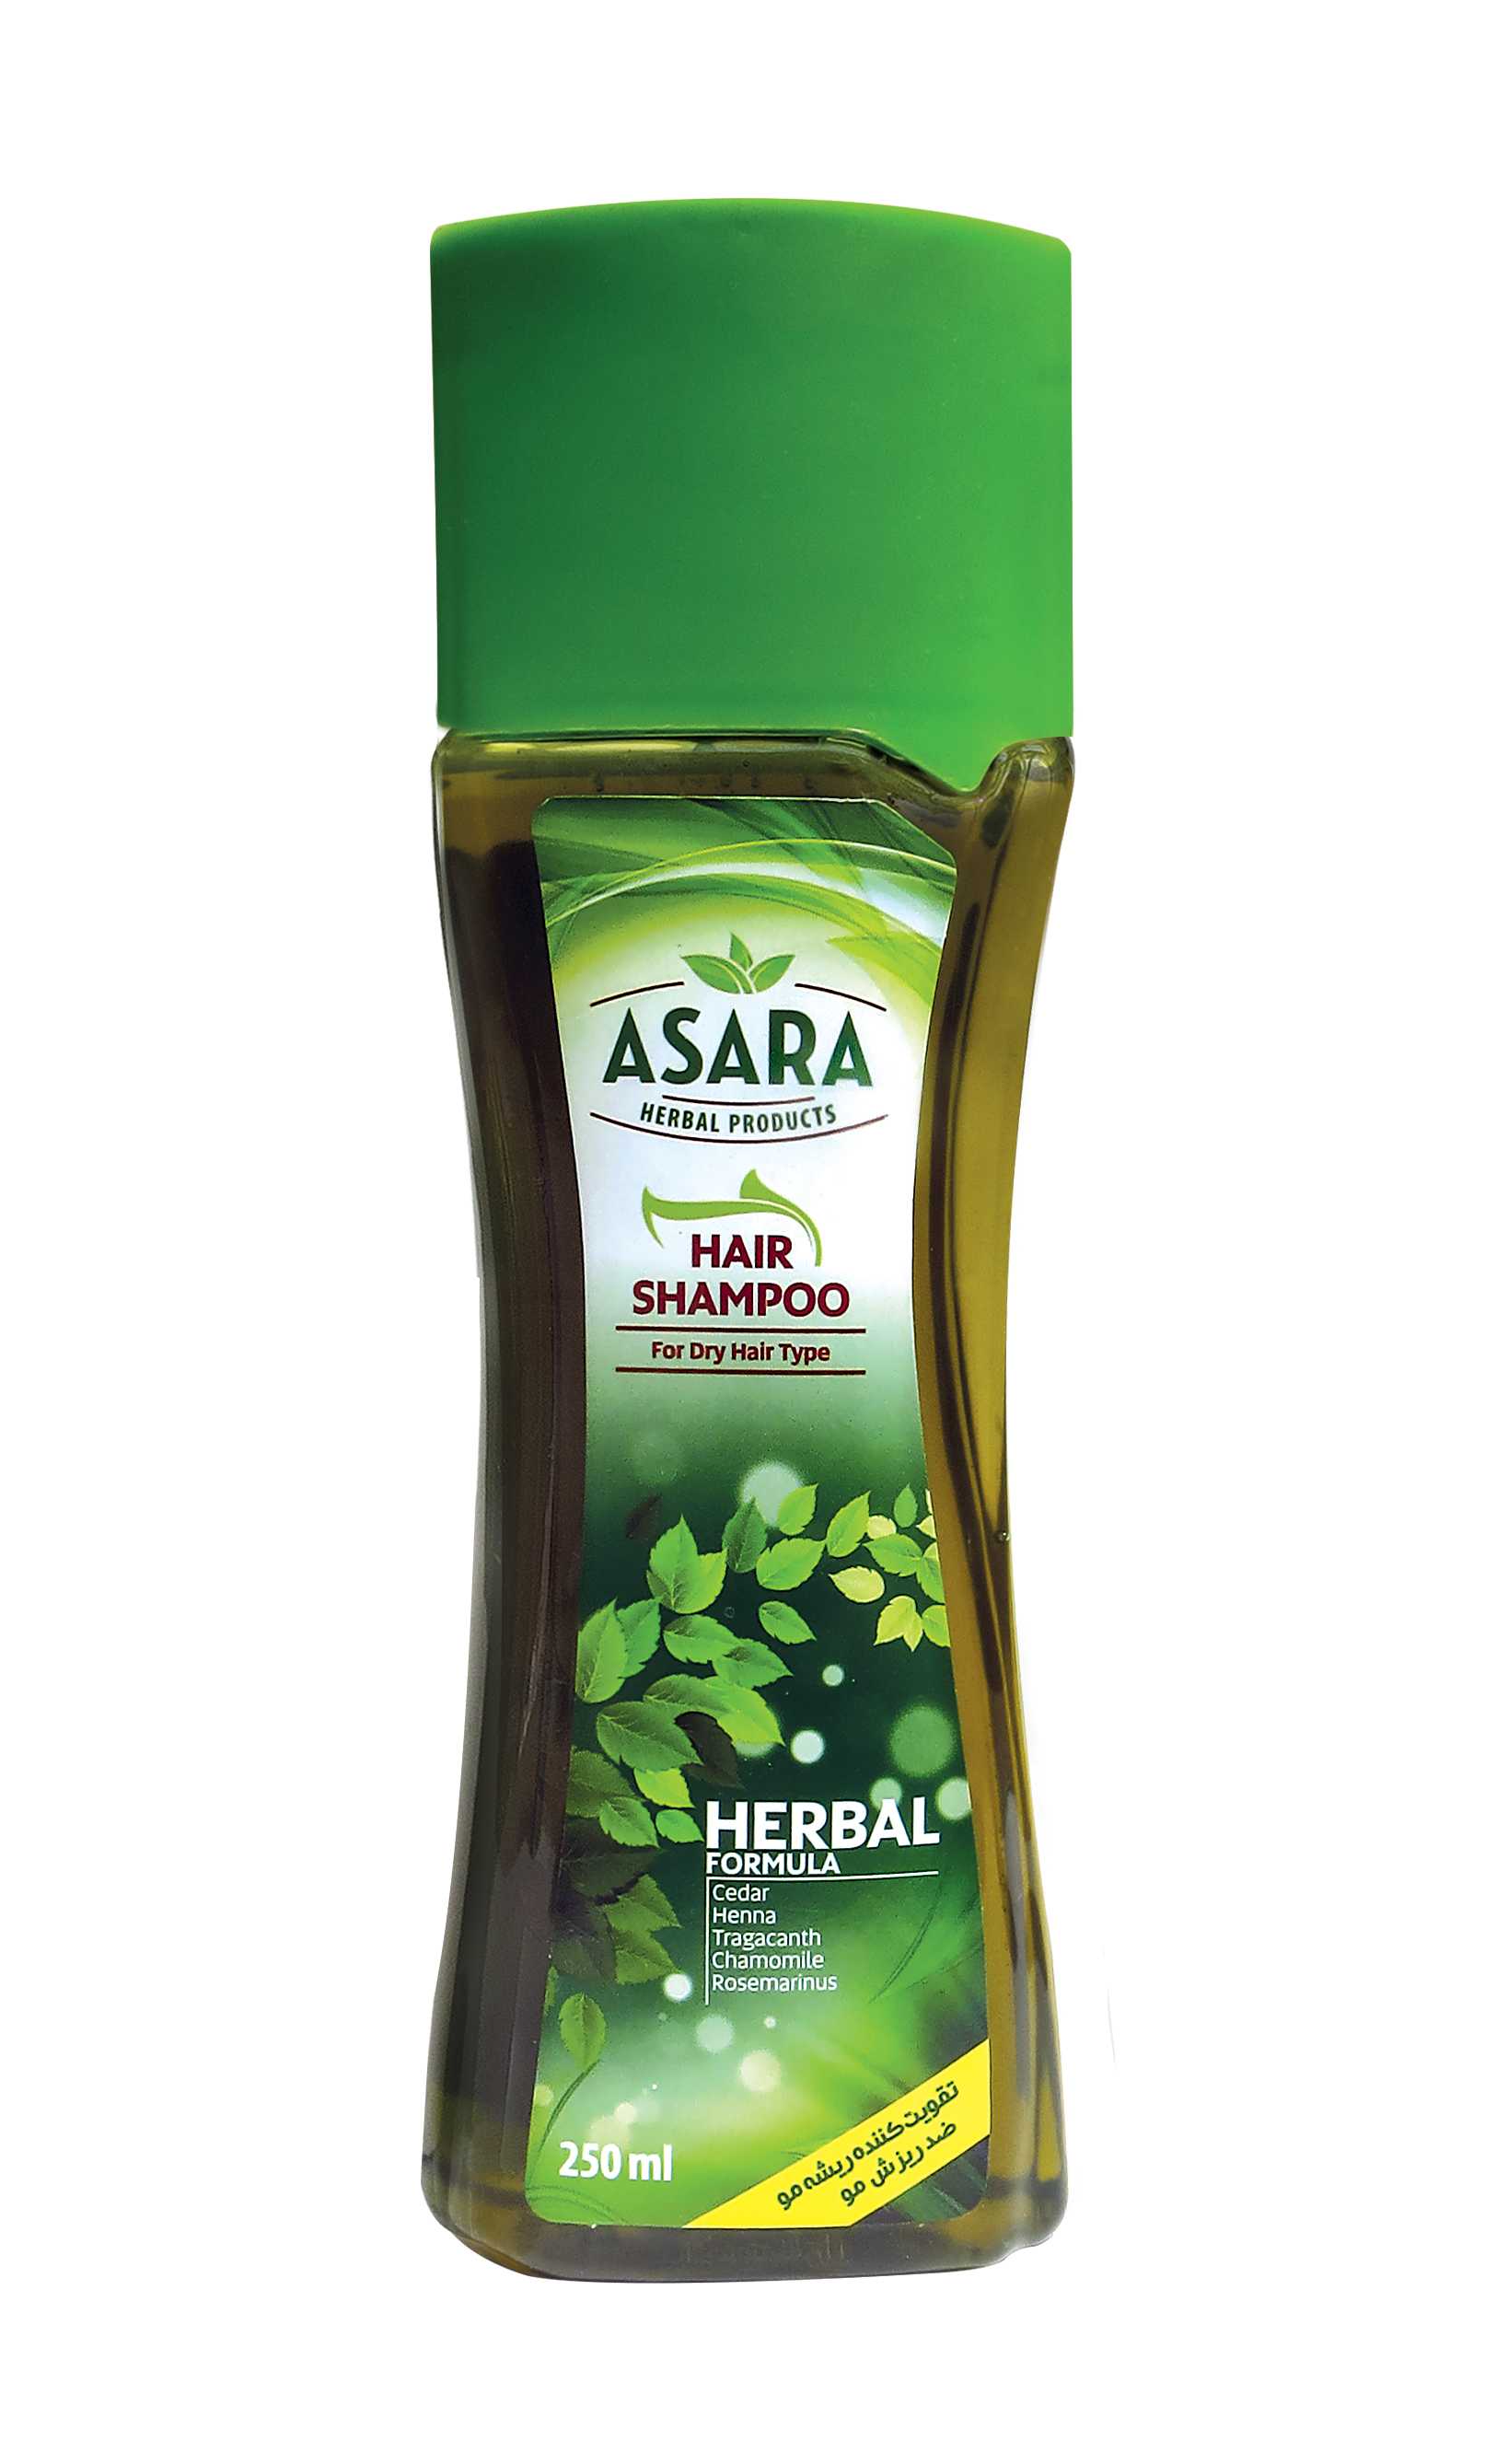 شامپو گیاهی آسارا برای موهای خشک - شامپو آسارا - بهترین شامپو - سالم و ارگانیک و طبیعی - سالم بازار